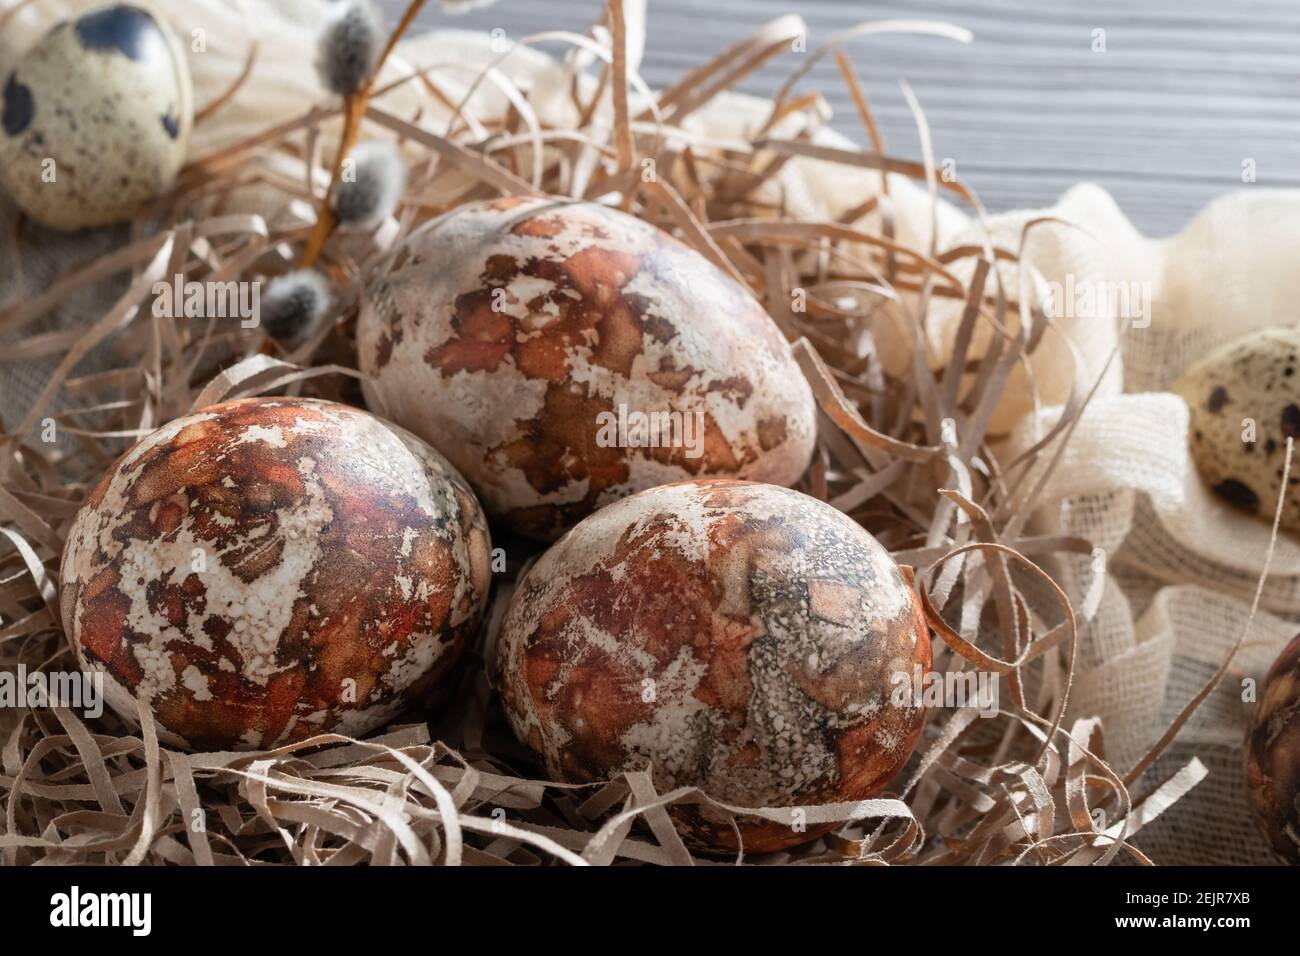 Composizione pasquale - diverse uova di marmo dipinte con coloranti naturali in un nido di carta sul tavolo. Foto Stock